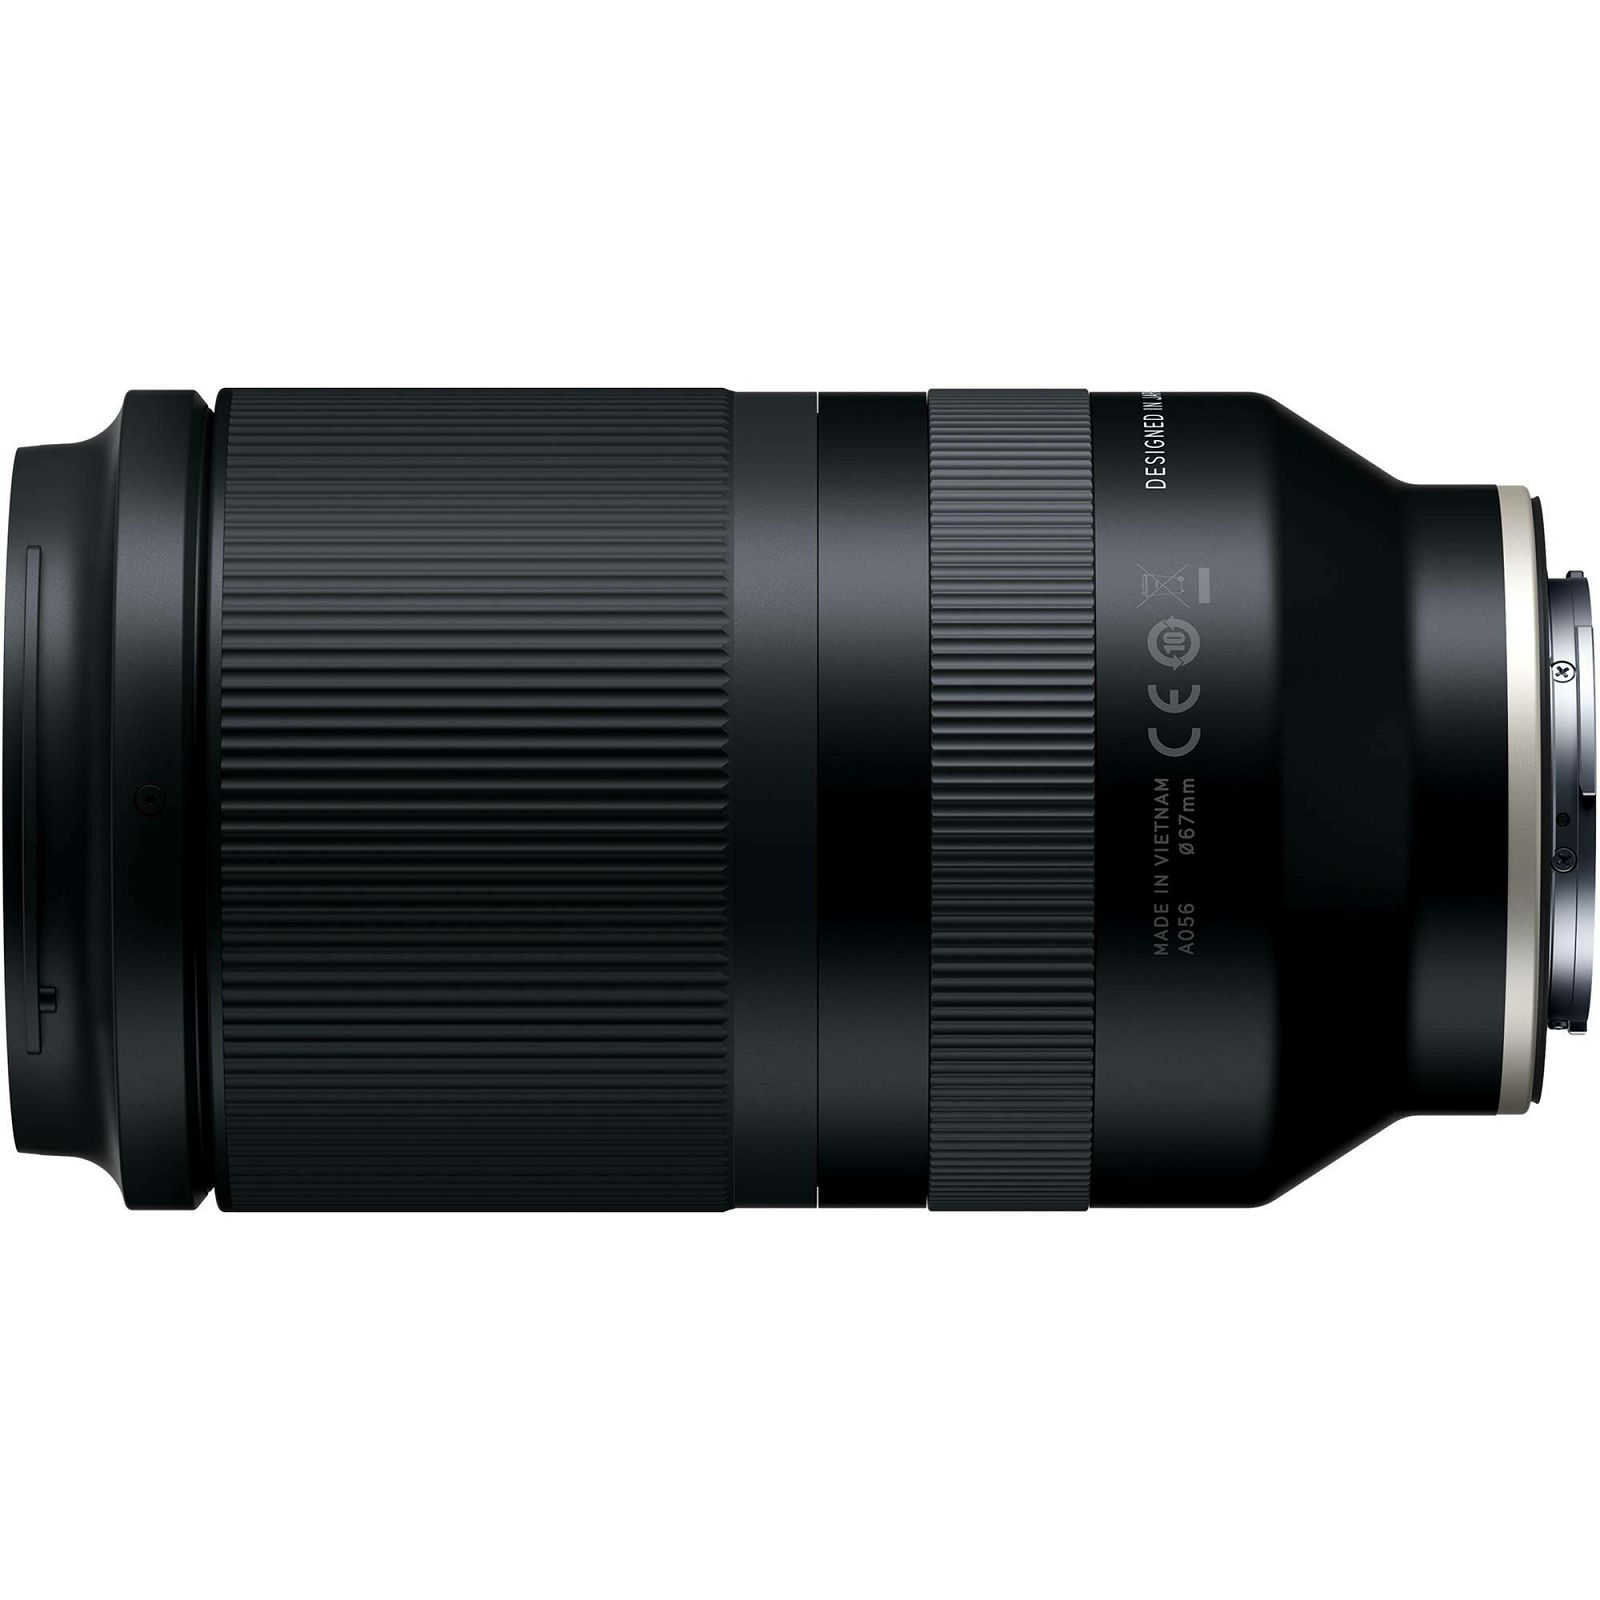 Tamron 70-180mm f/2.8 Di III VXD telefoto objektiv za Sony E-mount (A056SF)